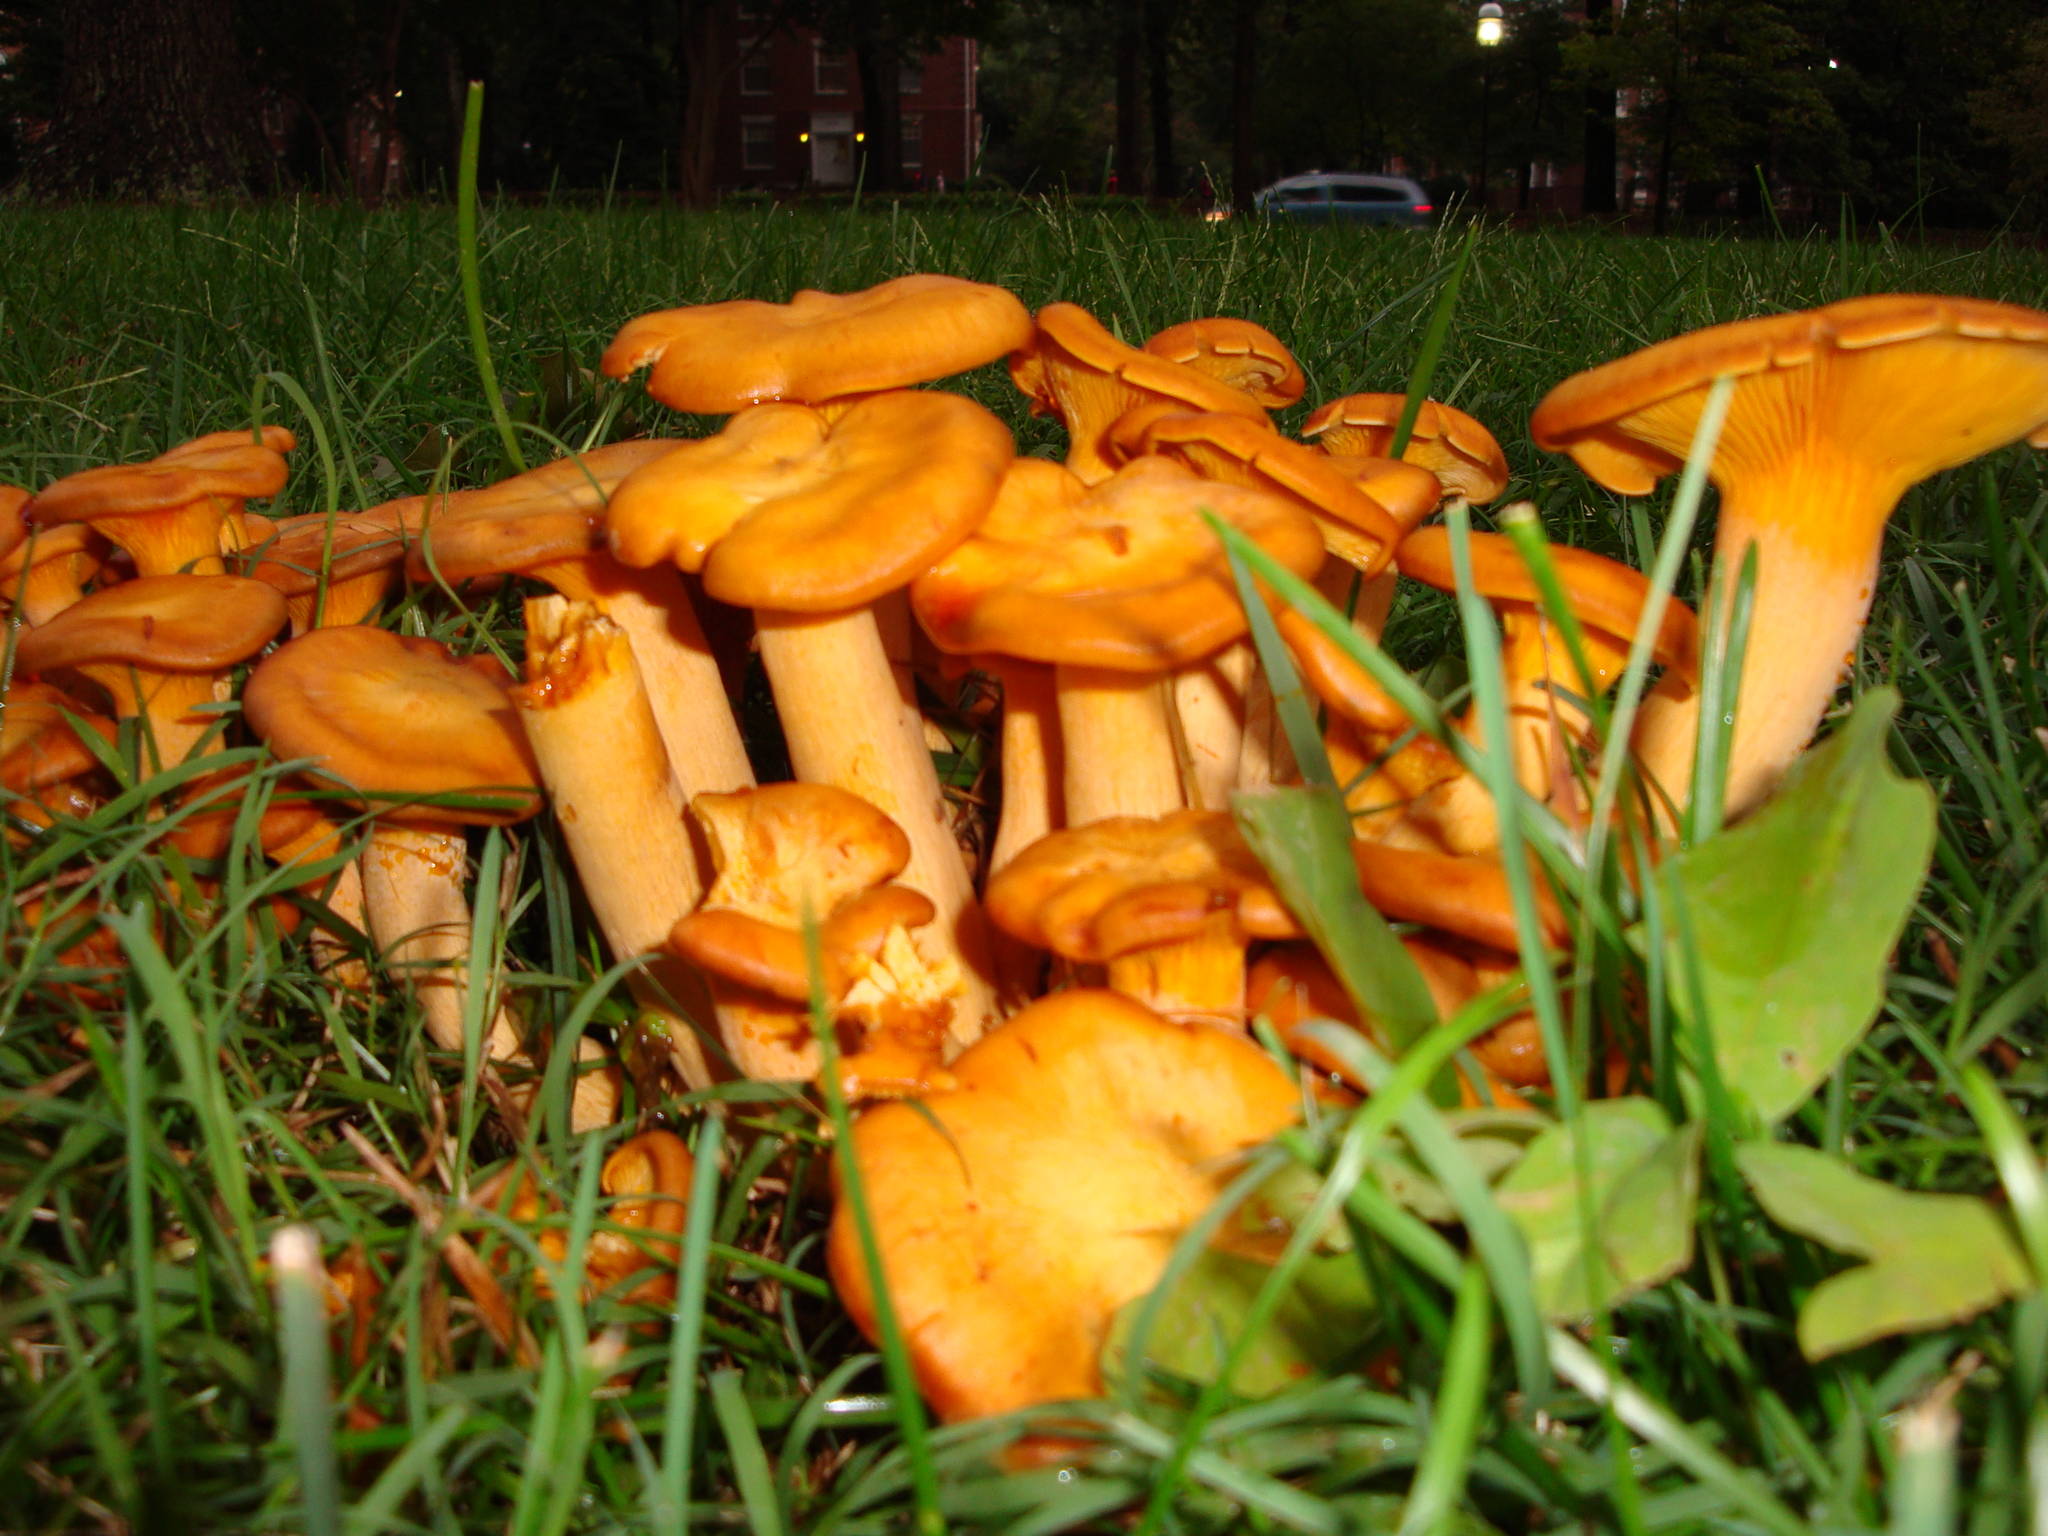 orange mushroom - Mushroom Hunting and Identification - Shroomery ...